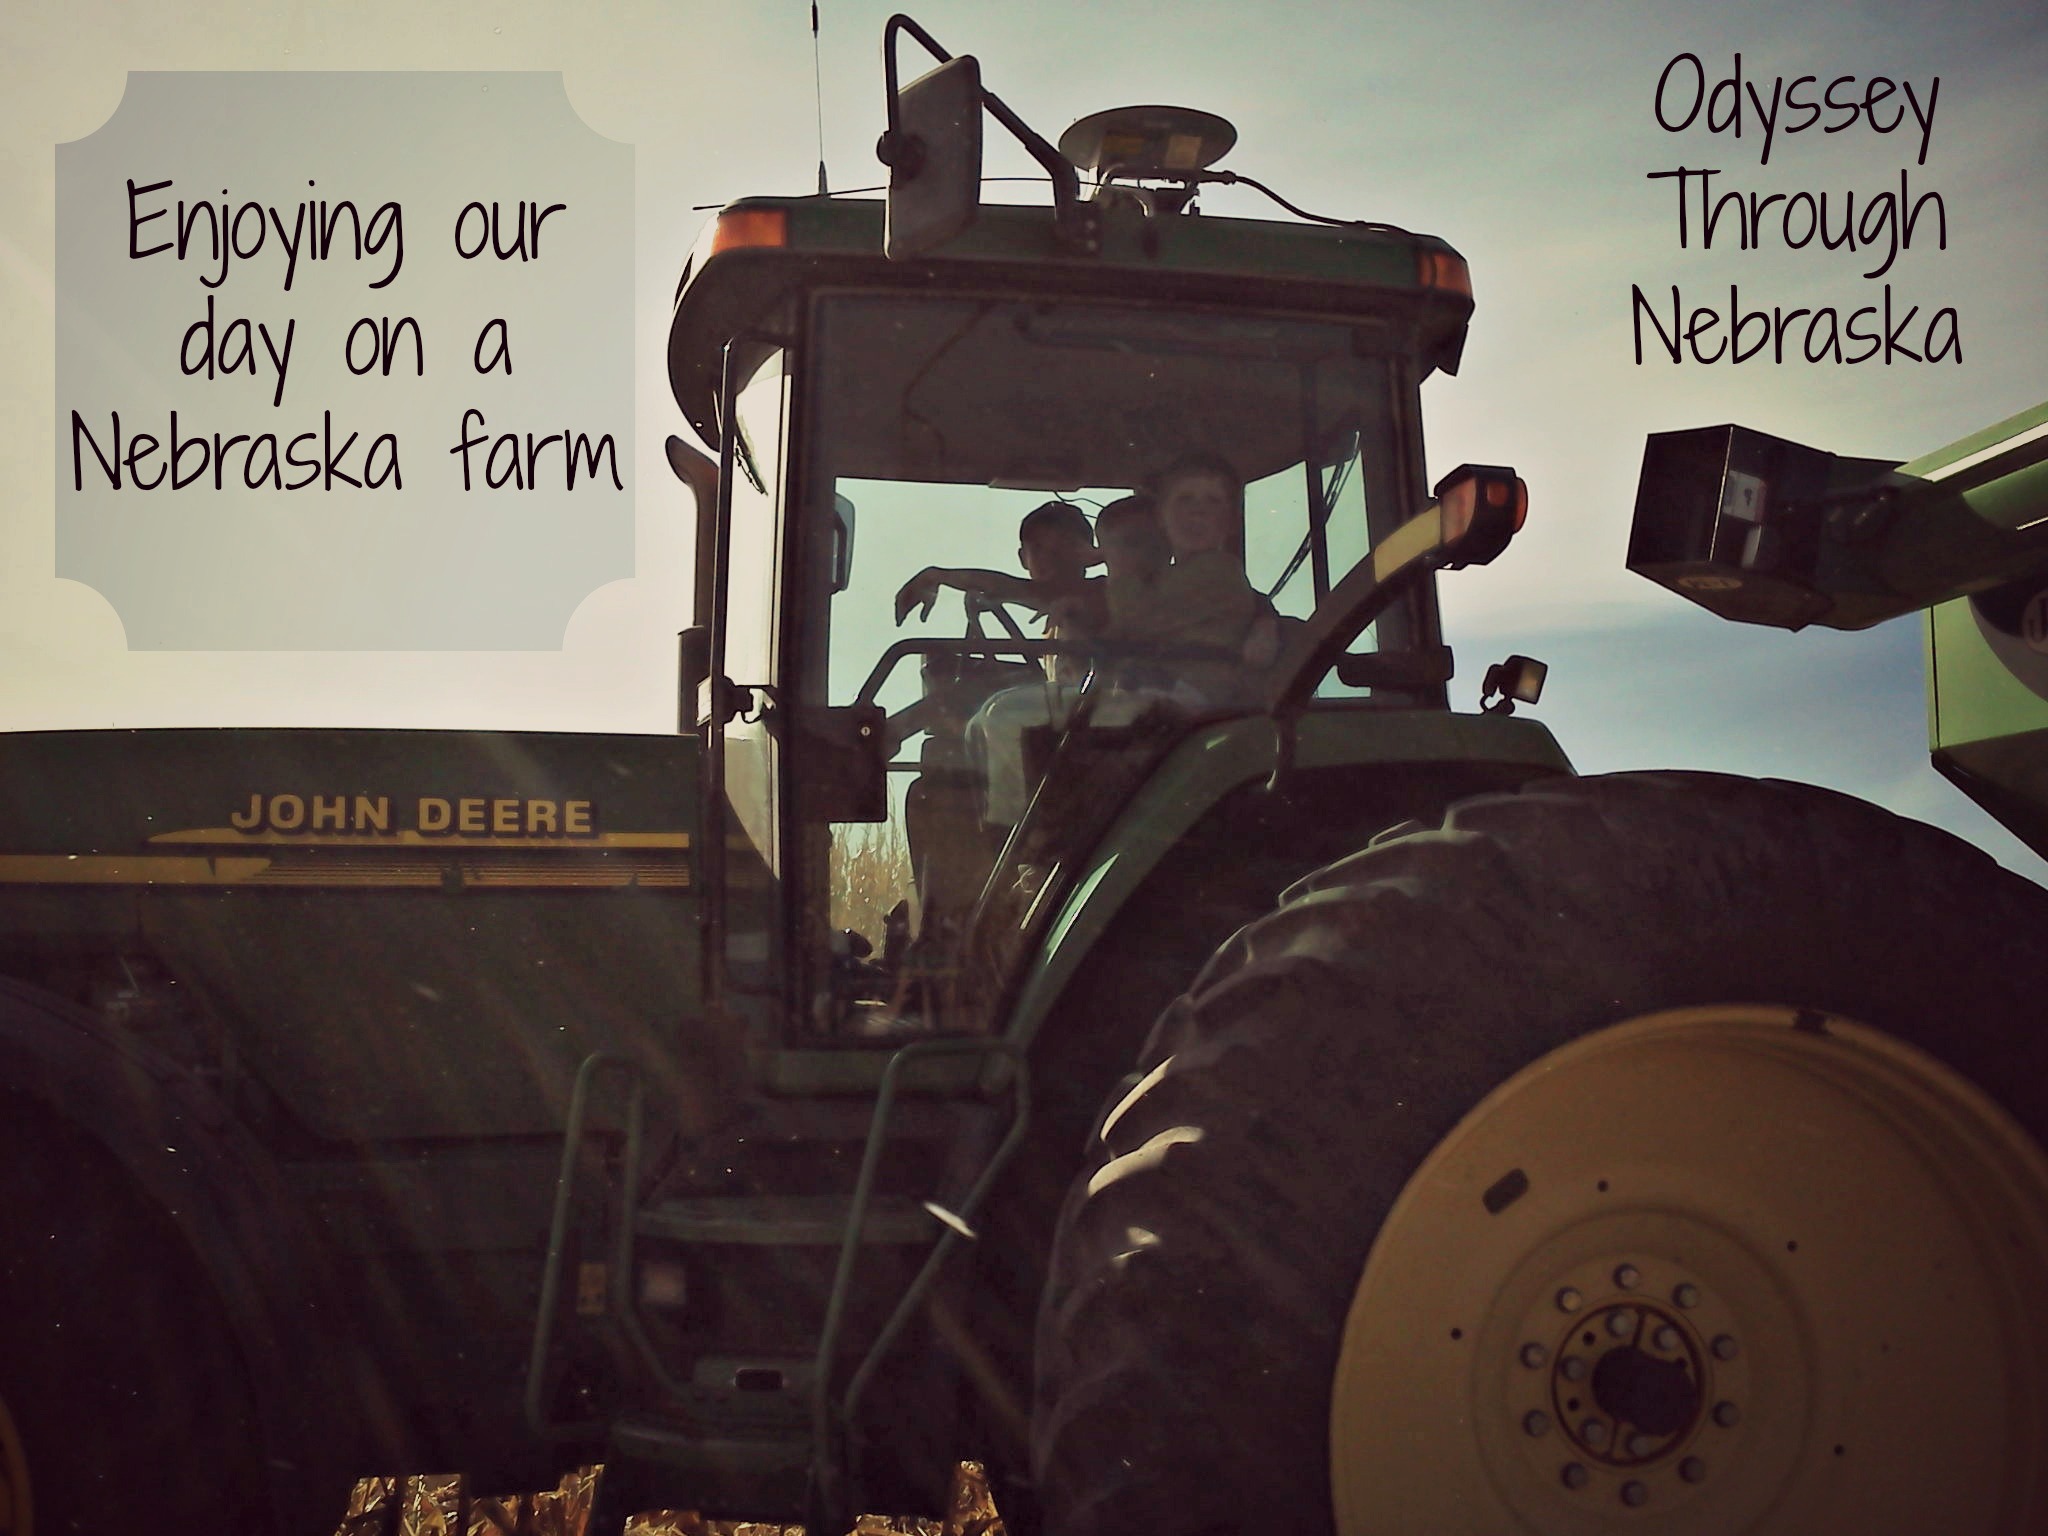 Nebraska farm and agriculture